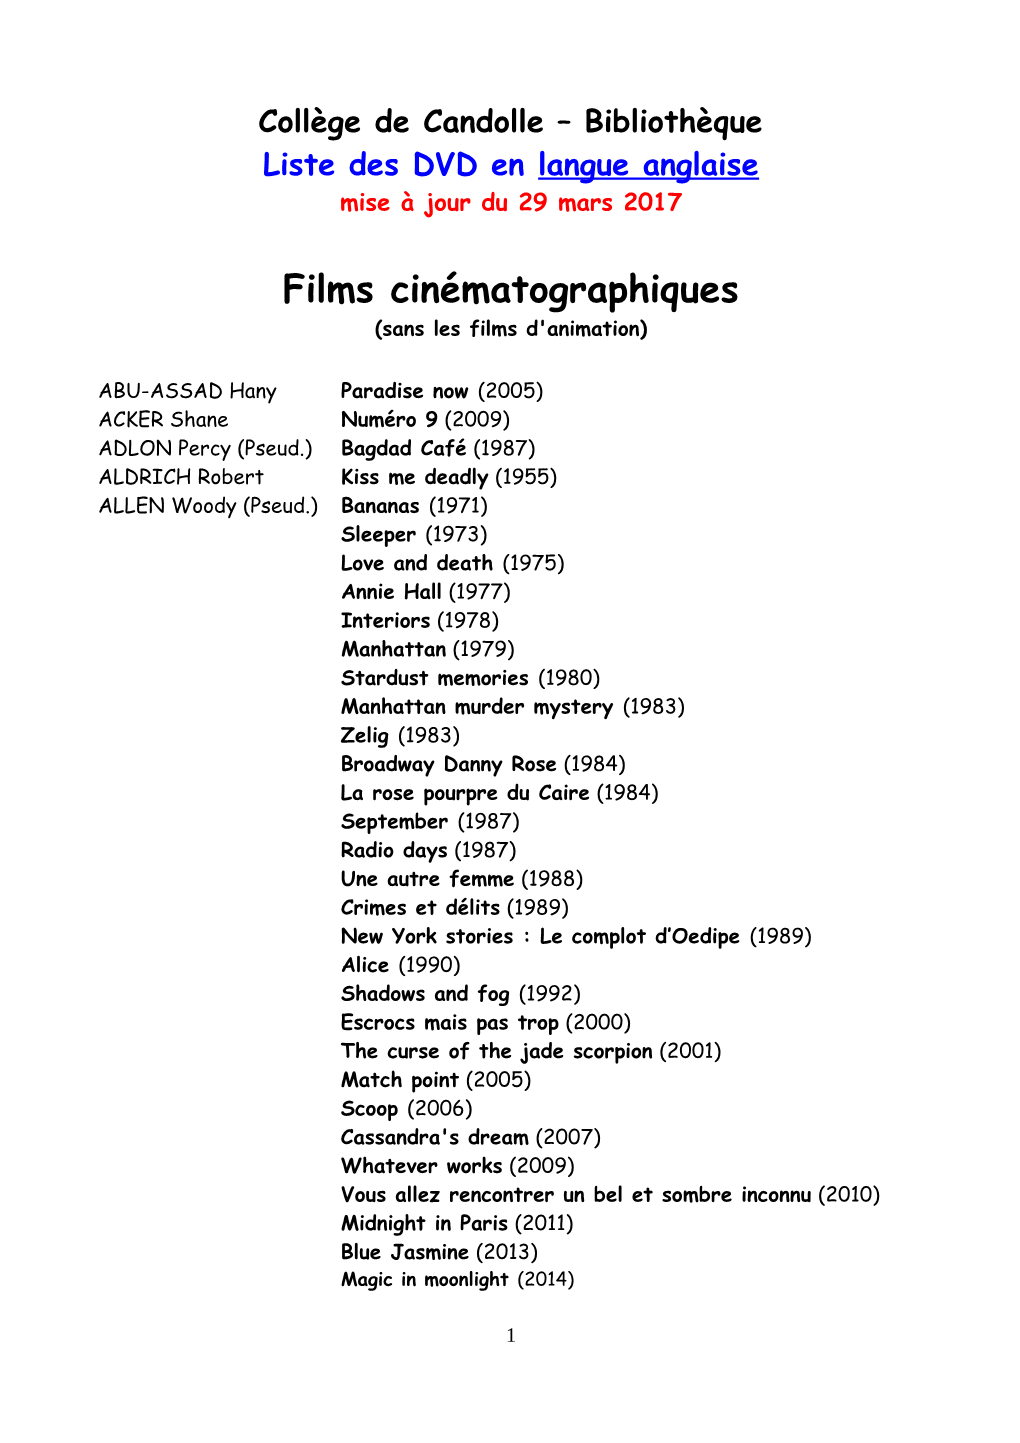 Films Cinématographiques (Sans Les Films D'animation)